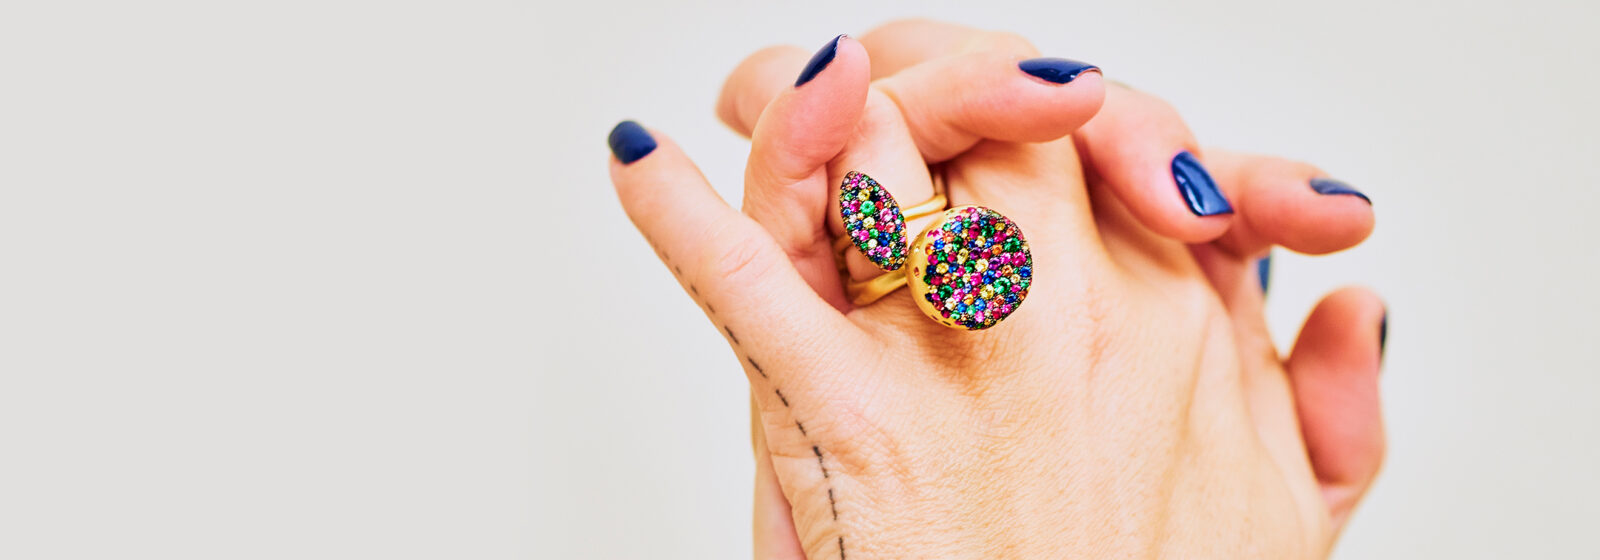 Explore Nada Ghazal's Jewelry - Rings and Earrings